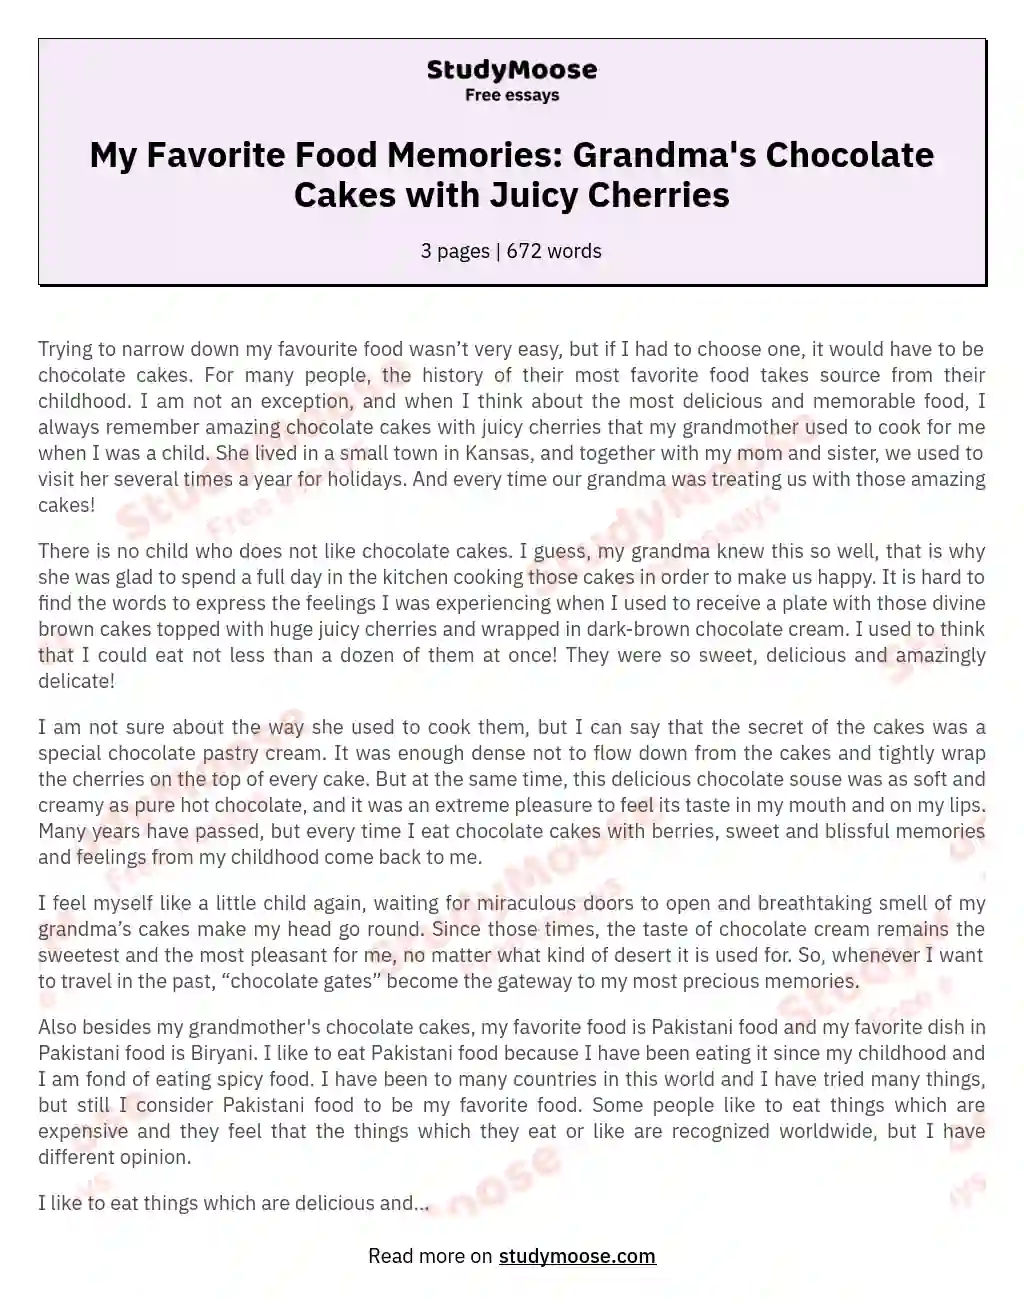 My Favorite Food Memories: Grandma's Chocolate Cakes with Juicy Cherries essay